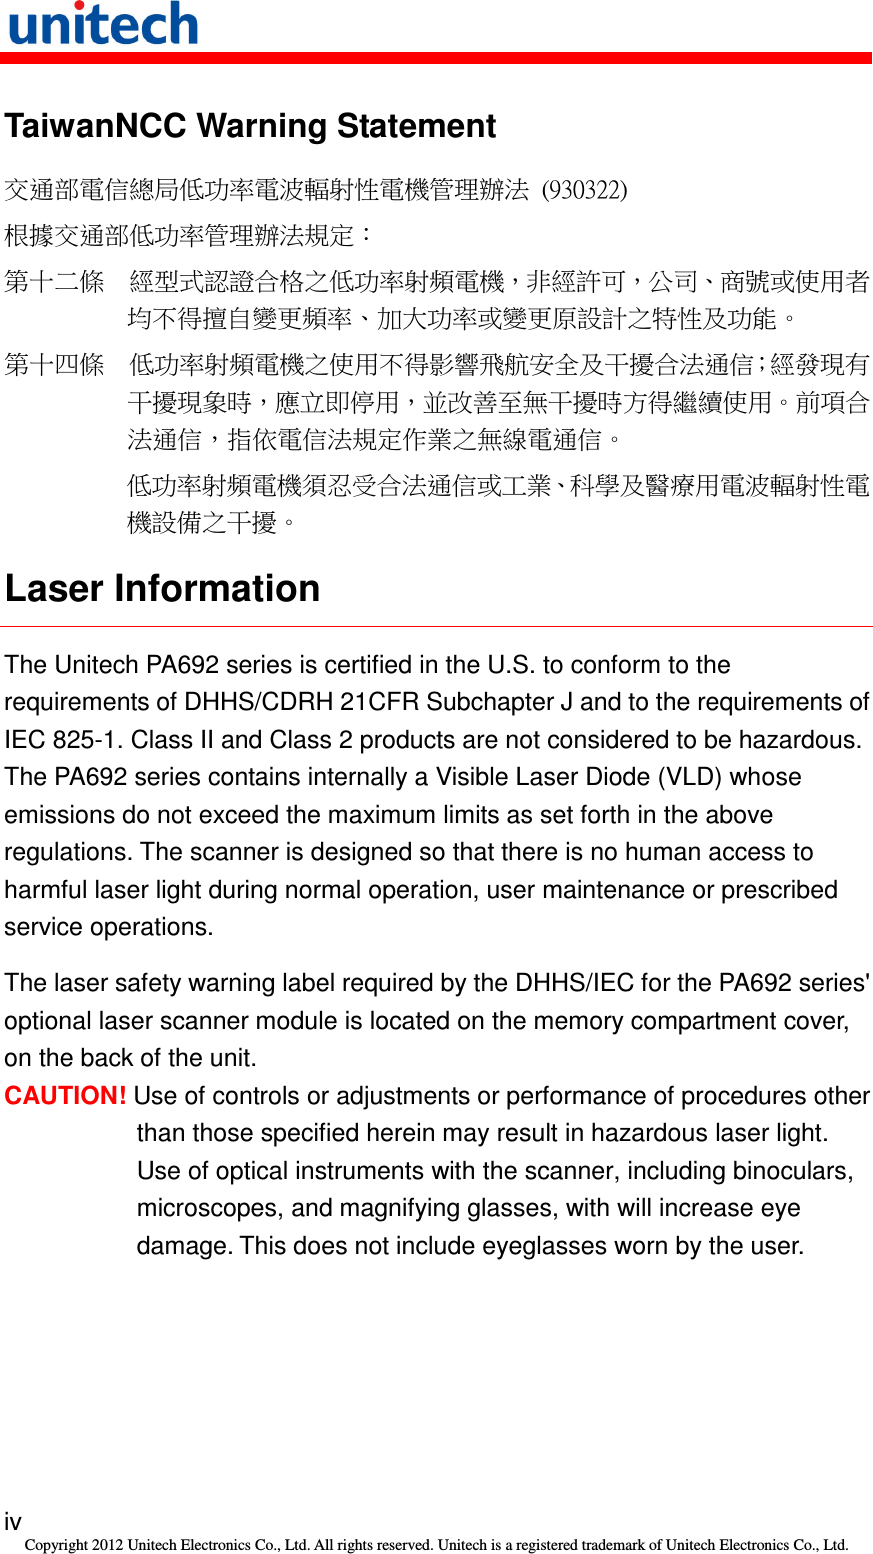   iv Copyright 2012 Unitech Electronics Co., Ltd. All rights reserved. Unitech is a registered trademark of Unitech Electronics Co., Ltd. TaiwanNCC Warning Statement 交通部電信總局低功率電波輻射性電機管理辦法  (930322) 根據交通部低功率管理辦法規定： 第十二條  經型式認證合格之低功率射頻電機，非經許可，公司、商號或使用者均不得擅自變更頻率、加大功率或變更原設計之特性及功能。 第十四條  低功率射頻電機之使用不得影響飛航安全及干擾合法通信；經發現有干擾現象時，應立即停用，並改善至無干擾時方得繼續使用。前項合法通信，指依電信法規定作業之無線電通信。 低功率射頻電機須忍受合法通信或工業、科學及醫療用電波輻射性電機設備之干擾。 Laser Information The Unitech PA692 series is certified in the U.S. to conform to the requirements of DHHS/CDRH 21CFR Subchapter J and to the requirements of IEC 825-1. Class II and Class 2 products are not considered to be hazardous. The PA692 series contains internally a Visible Laser Diode (VLD) whose emissions do not exceed the maximum limits as set forth in the above regulations. The scanner is designed so that there is no human access to harmful laser light during normal operation, user maintenance or prescribed service operations. The laser safety warning label required by the DHHS/IEC for the PA692 series&apos; optional laser scanner module is located on the memory compartment cover, on the back of the unit. CAUTION! Use of controls or adjustments or performance of procedures other than those specified herein may result in hazardous laser light. Use of optical instruments with the scanner, including binoculars, microscopes, and magnifying glasses, with will increase eye damage. This does not include eyeglasses worn by the user. 